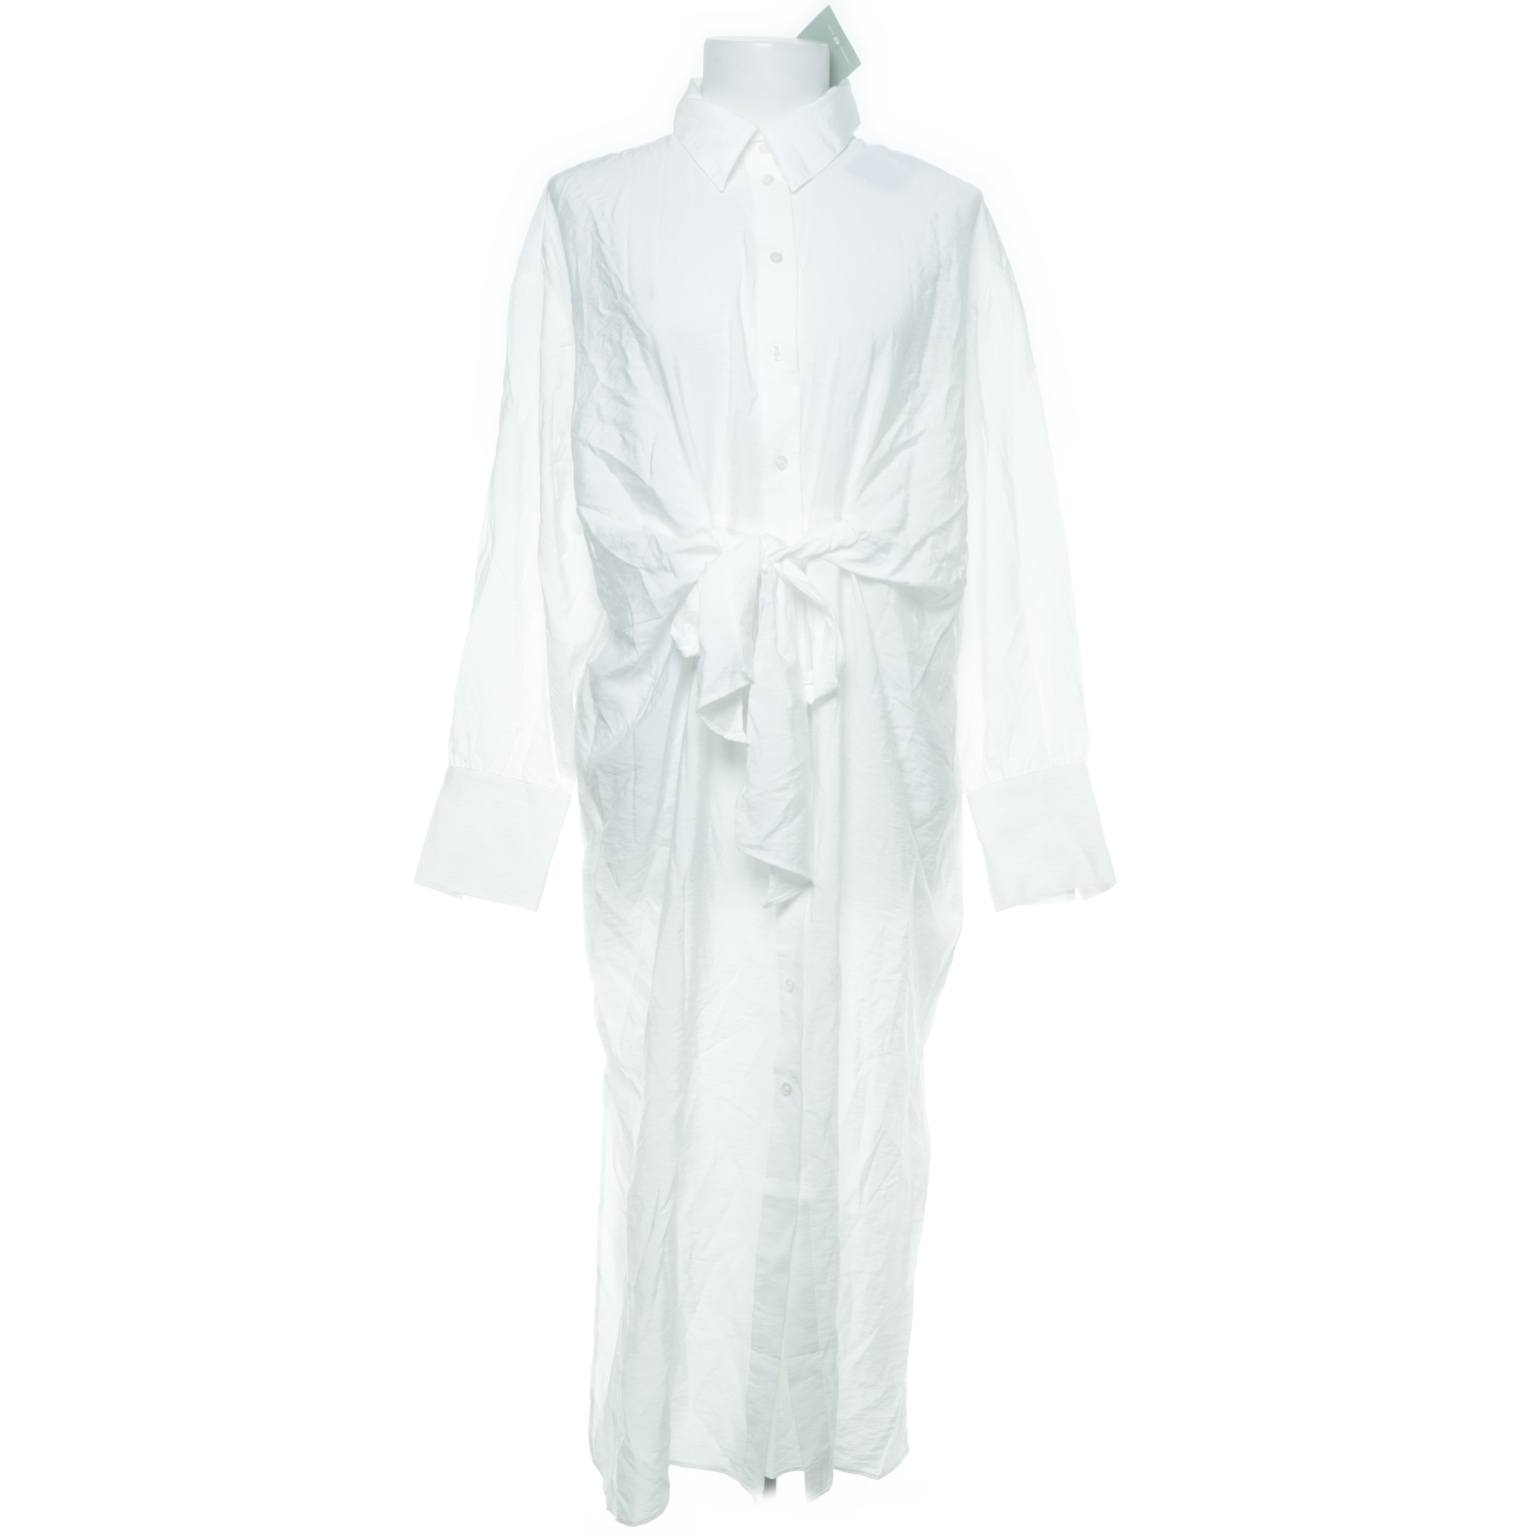 H&M - Blusenkleid - Größe: S - Weiß von H&M